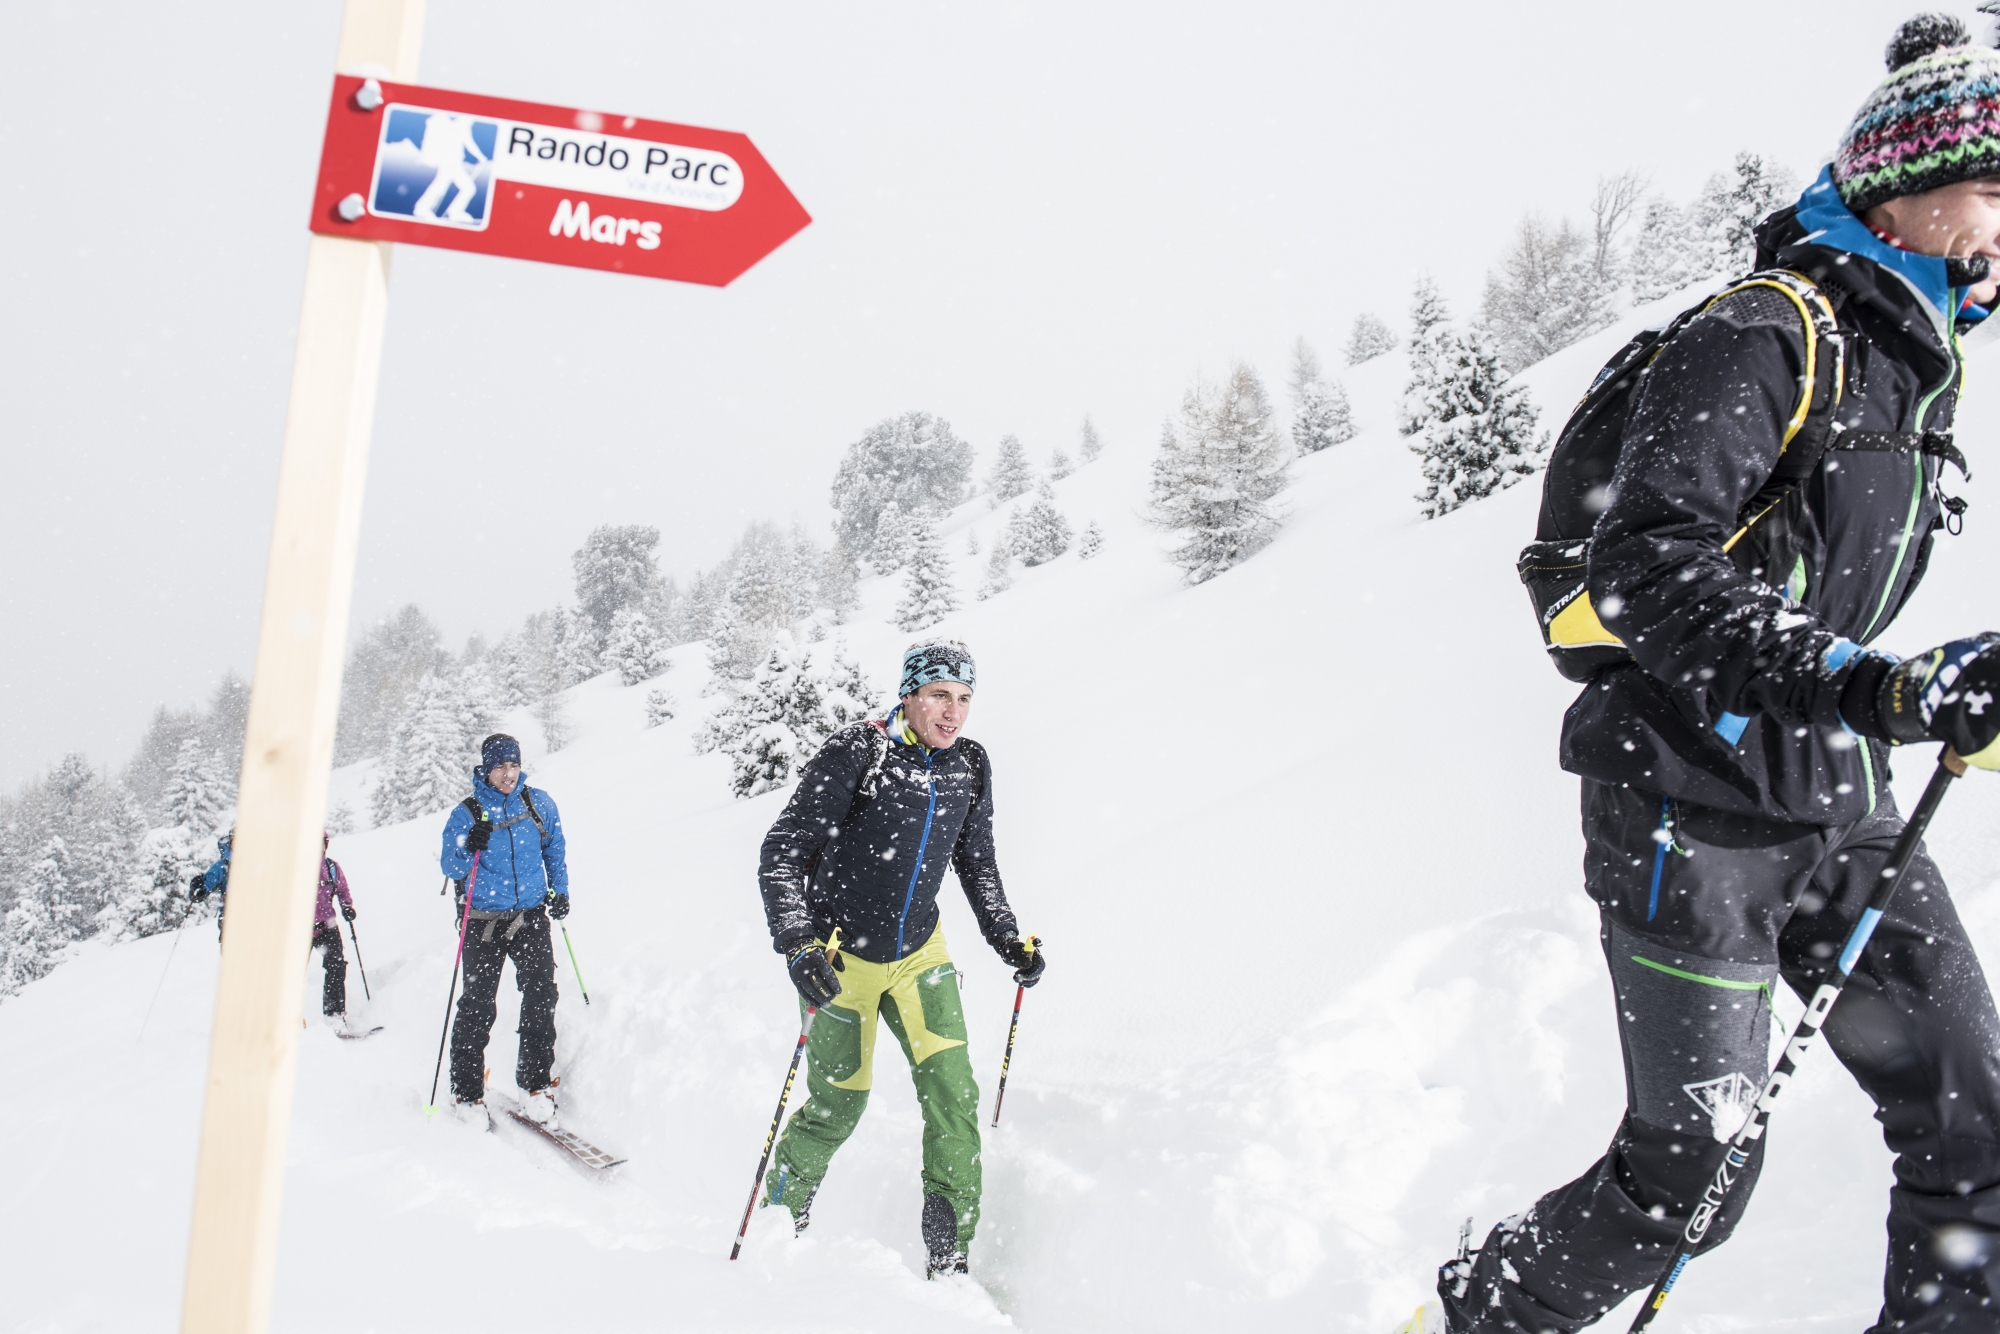 Les randos parcs, comme ici celui de St-Luc, dans le Val d'Anniviers, contribuent à l'essor du ski de randonnée en Valais.